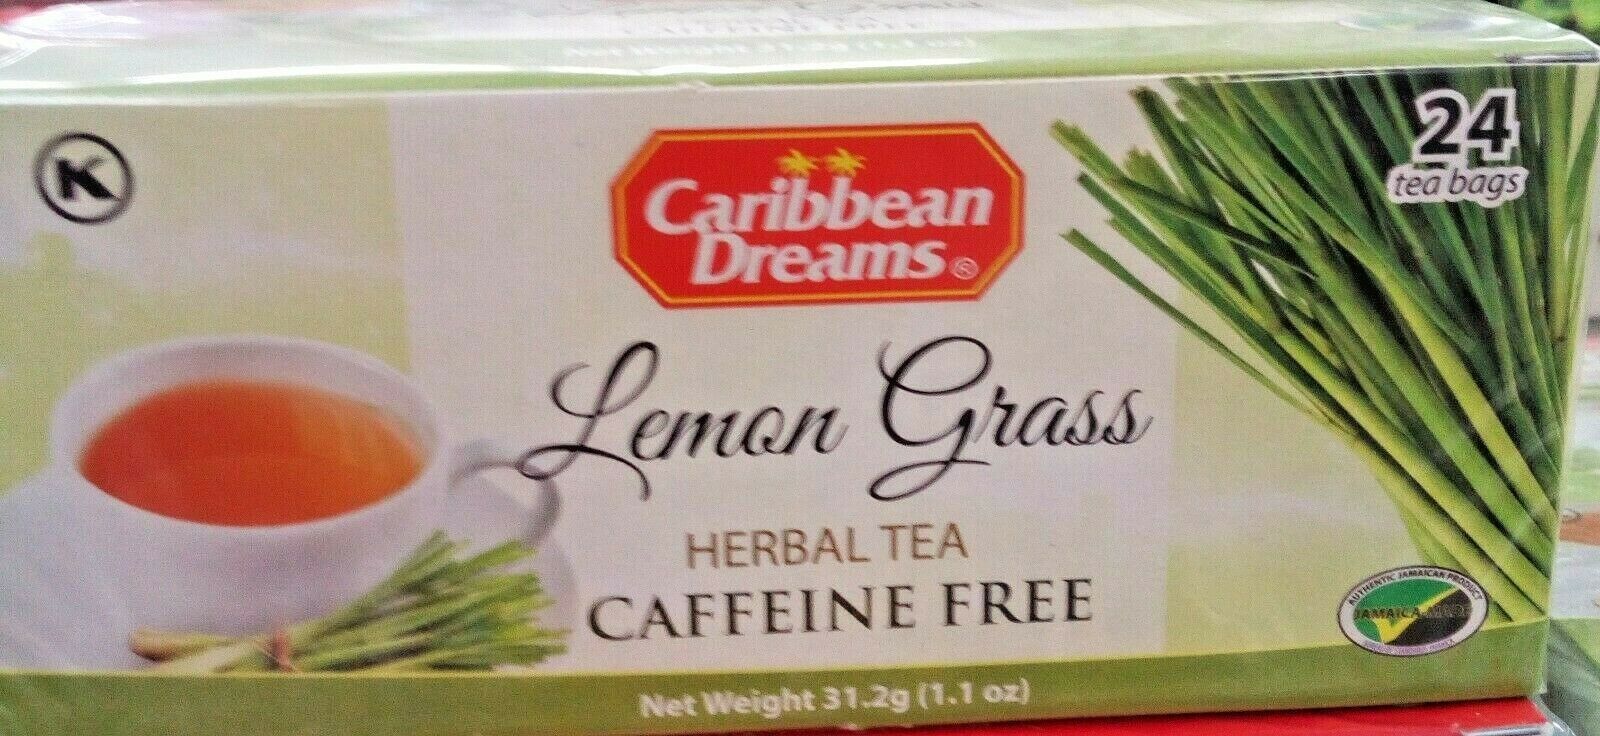 Fever Grass (Lemon Grass) Tea bags (24 tea bags) 31.2.g. 100% Jamaican